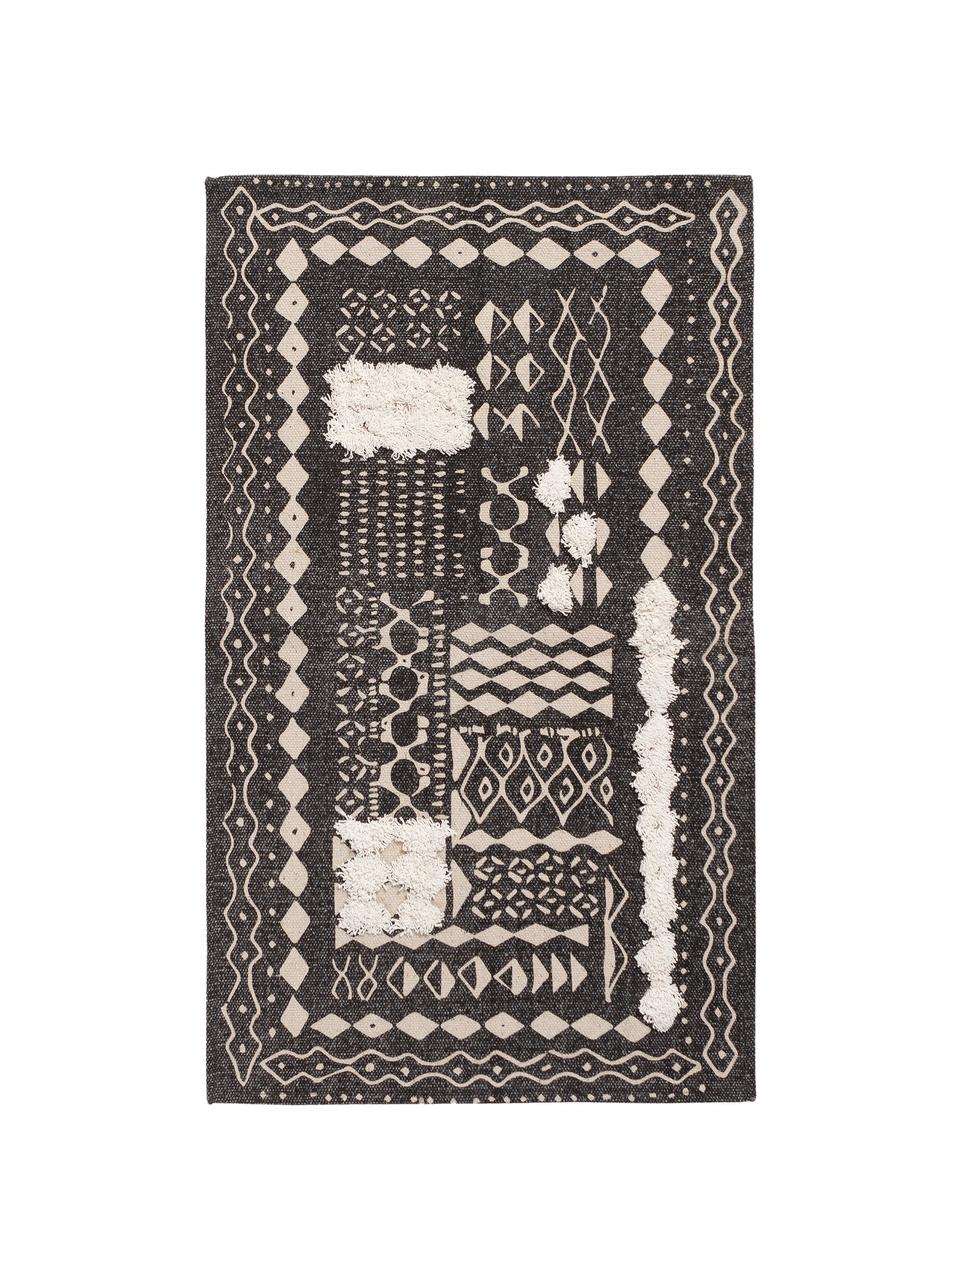 Dywan z bawełny z wypukła strukturą w stylu boho  Boa, 100% bawełna, Czarny, biały, S 150 x D 200 cm (Rozmiar S)